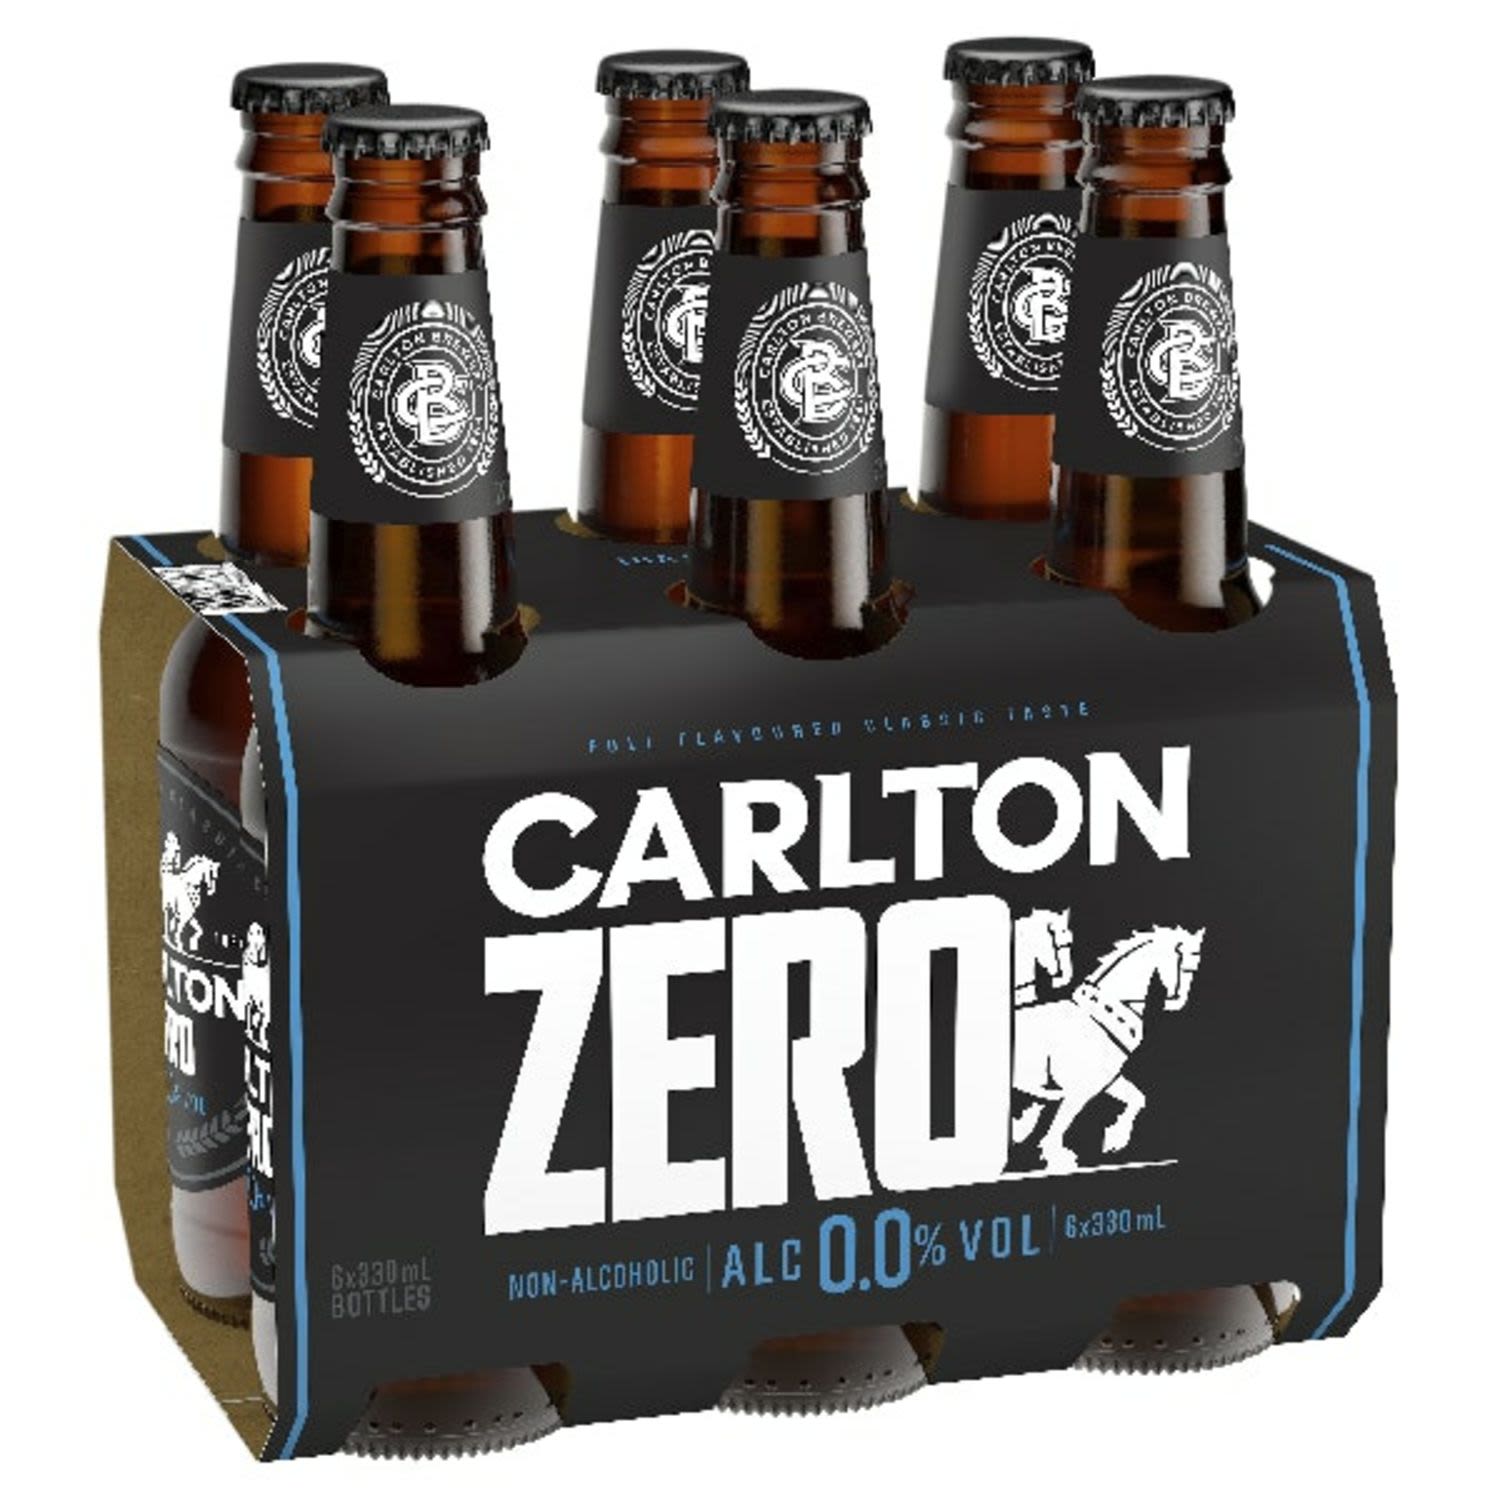 100% Carlton. 0% alcohol.<br /> <br />Alcohol Volume: 0.00%<br /><br />Pack Format: 6 Pack<br /><br />Standard Drinks: 0<br /><br />Pack Type: Bottle<br /><br />Country of Origin: Australia<br />